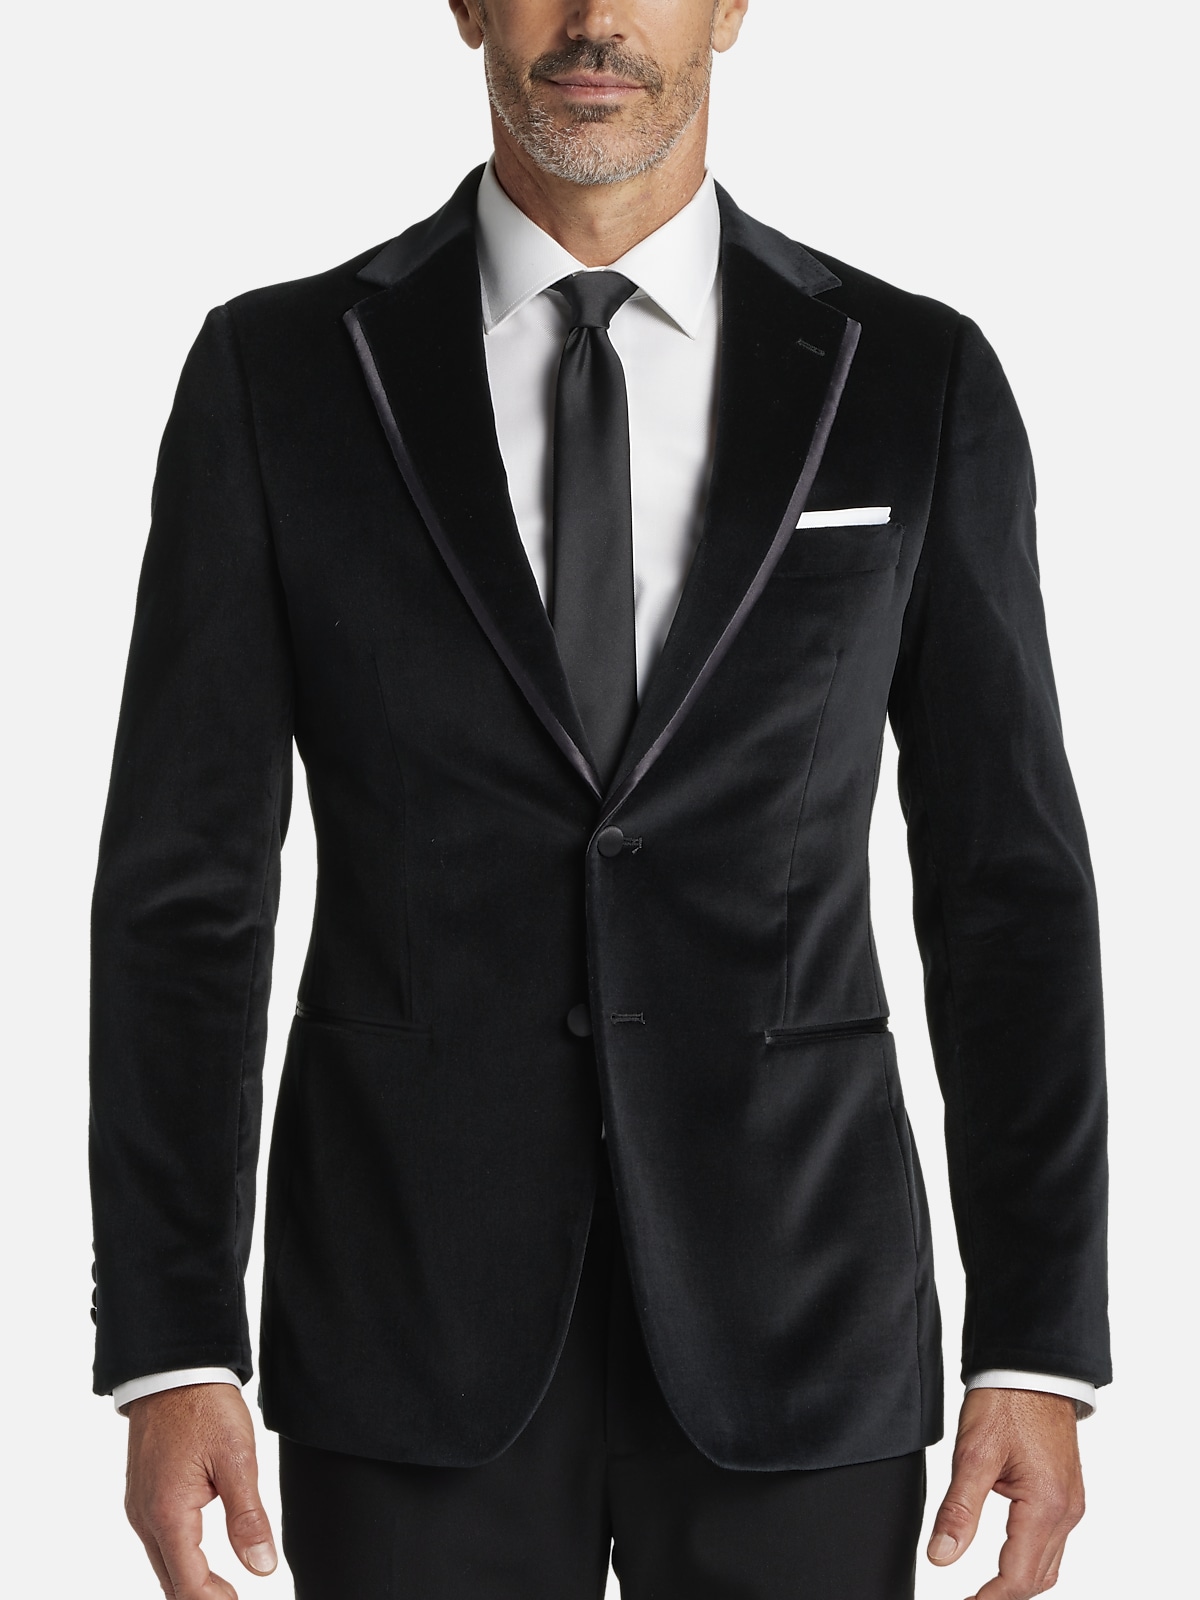 Joseph Abboud Slim Fit Dinner Jacket | All Sale| Men's Wearhouse